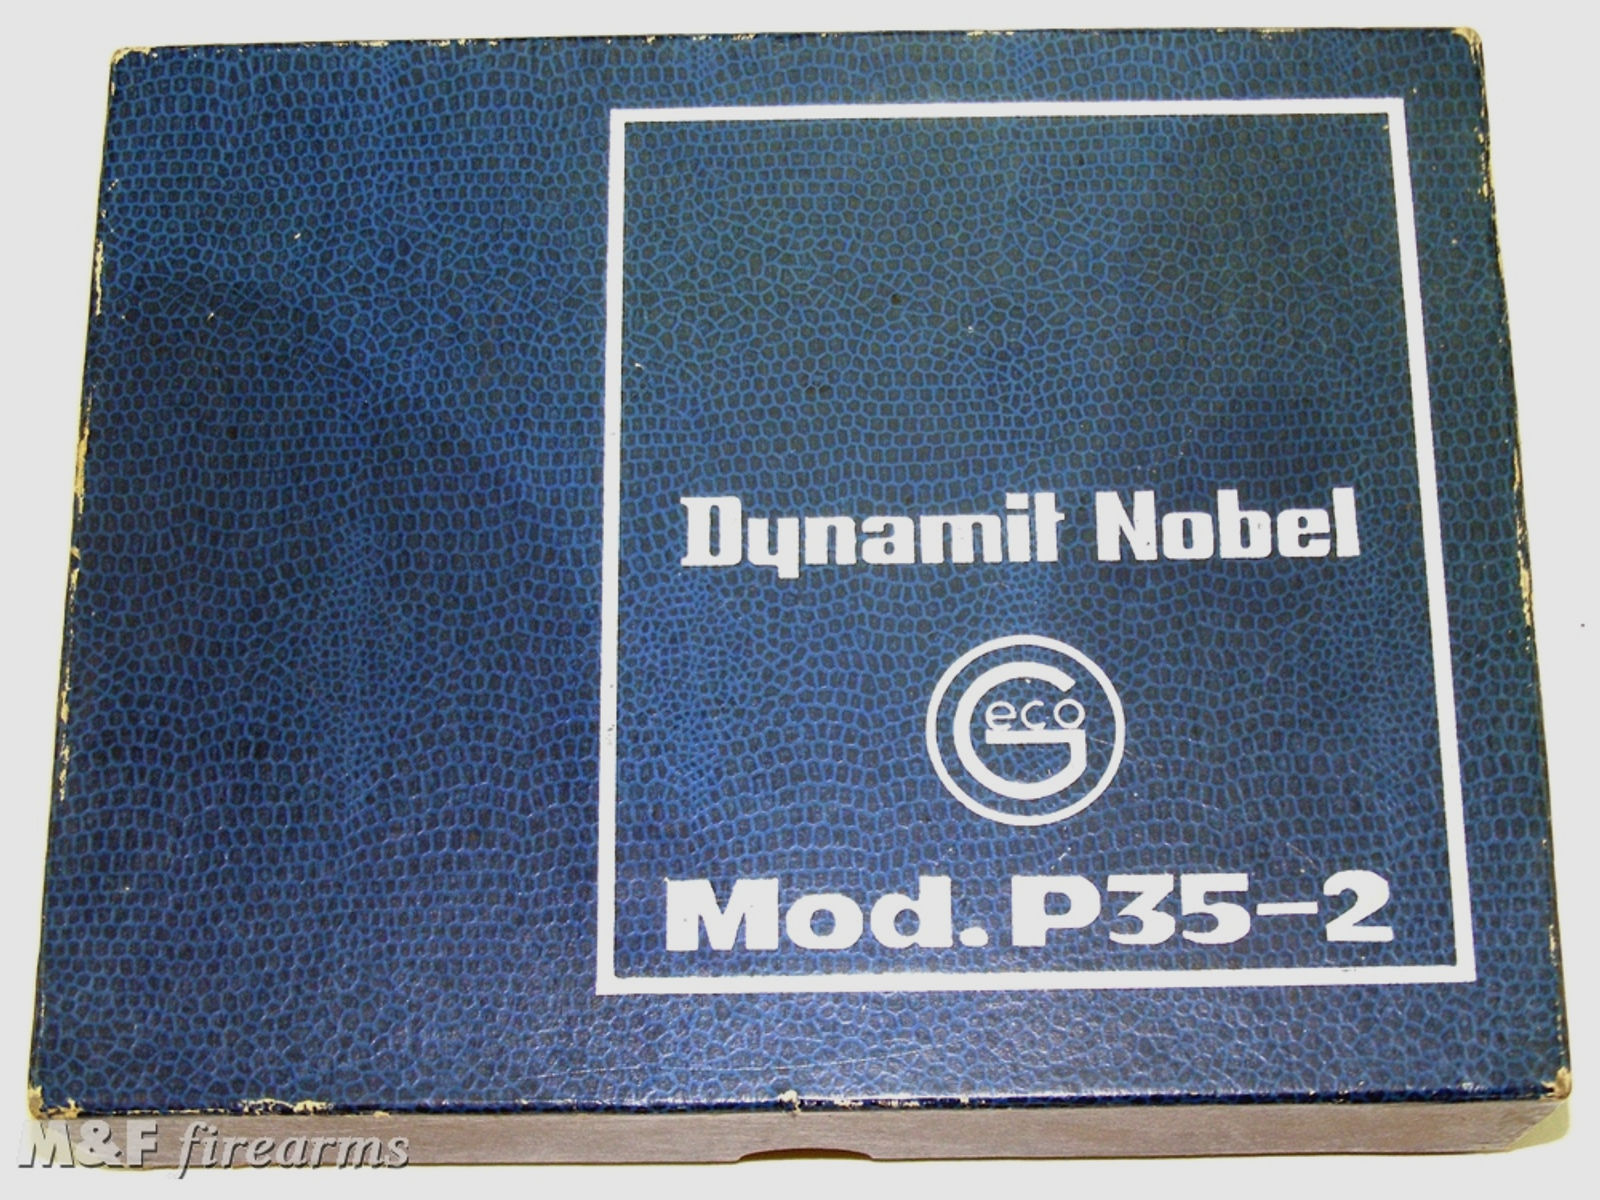 Dynamit Nobel GECO Mod. P35-2 Kaliber .35 Platz